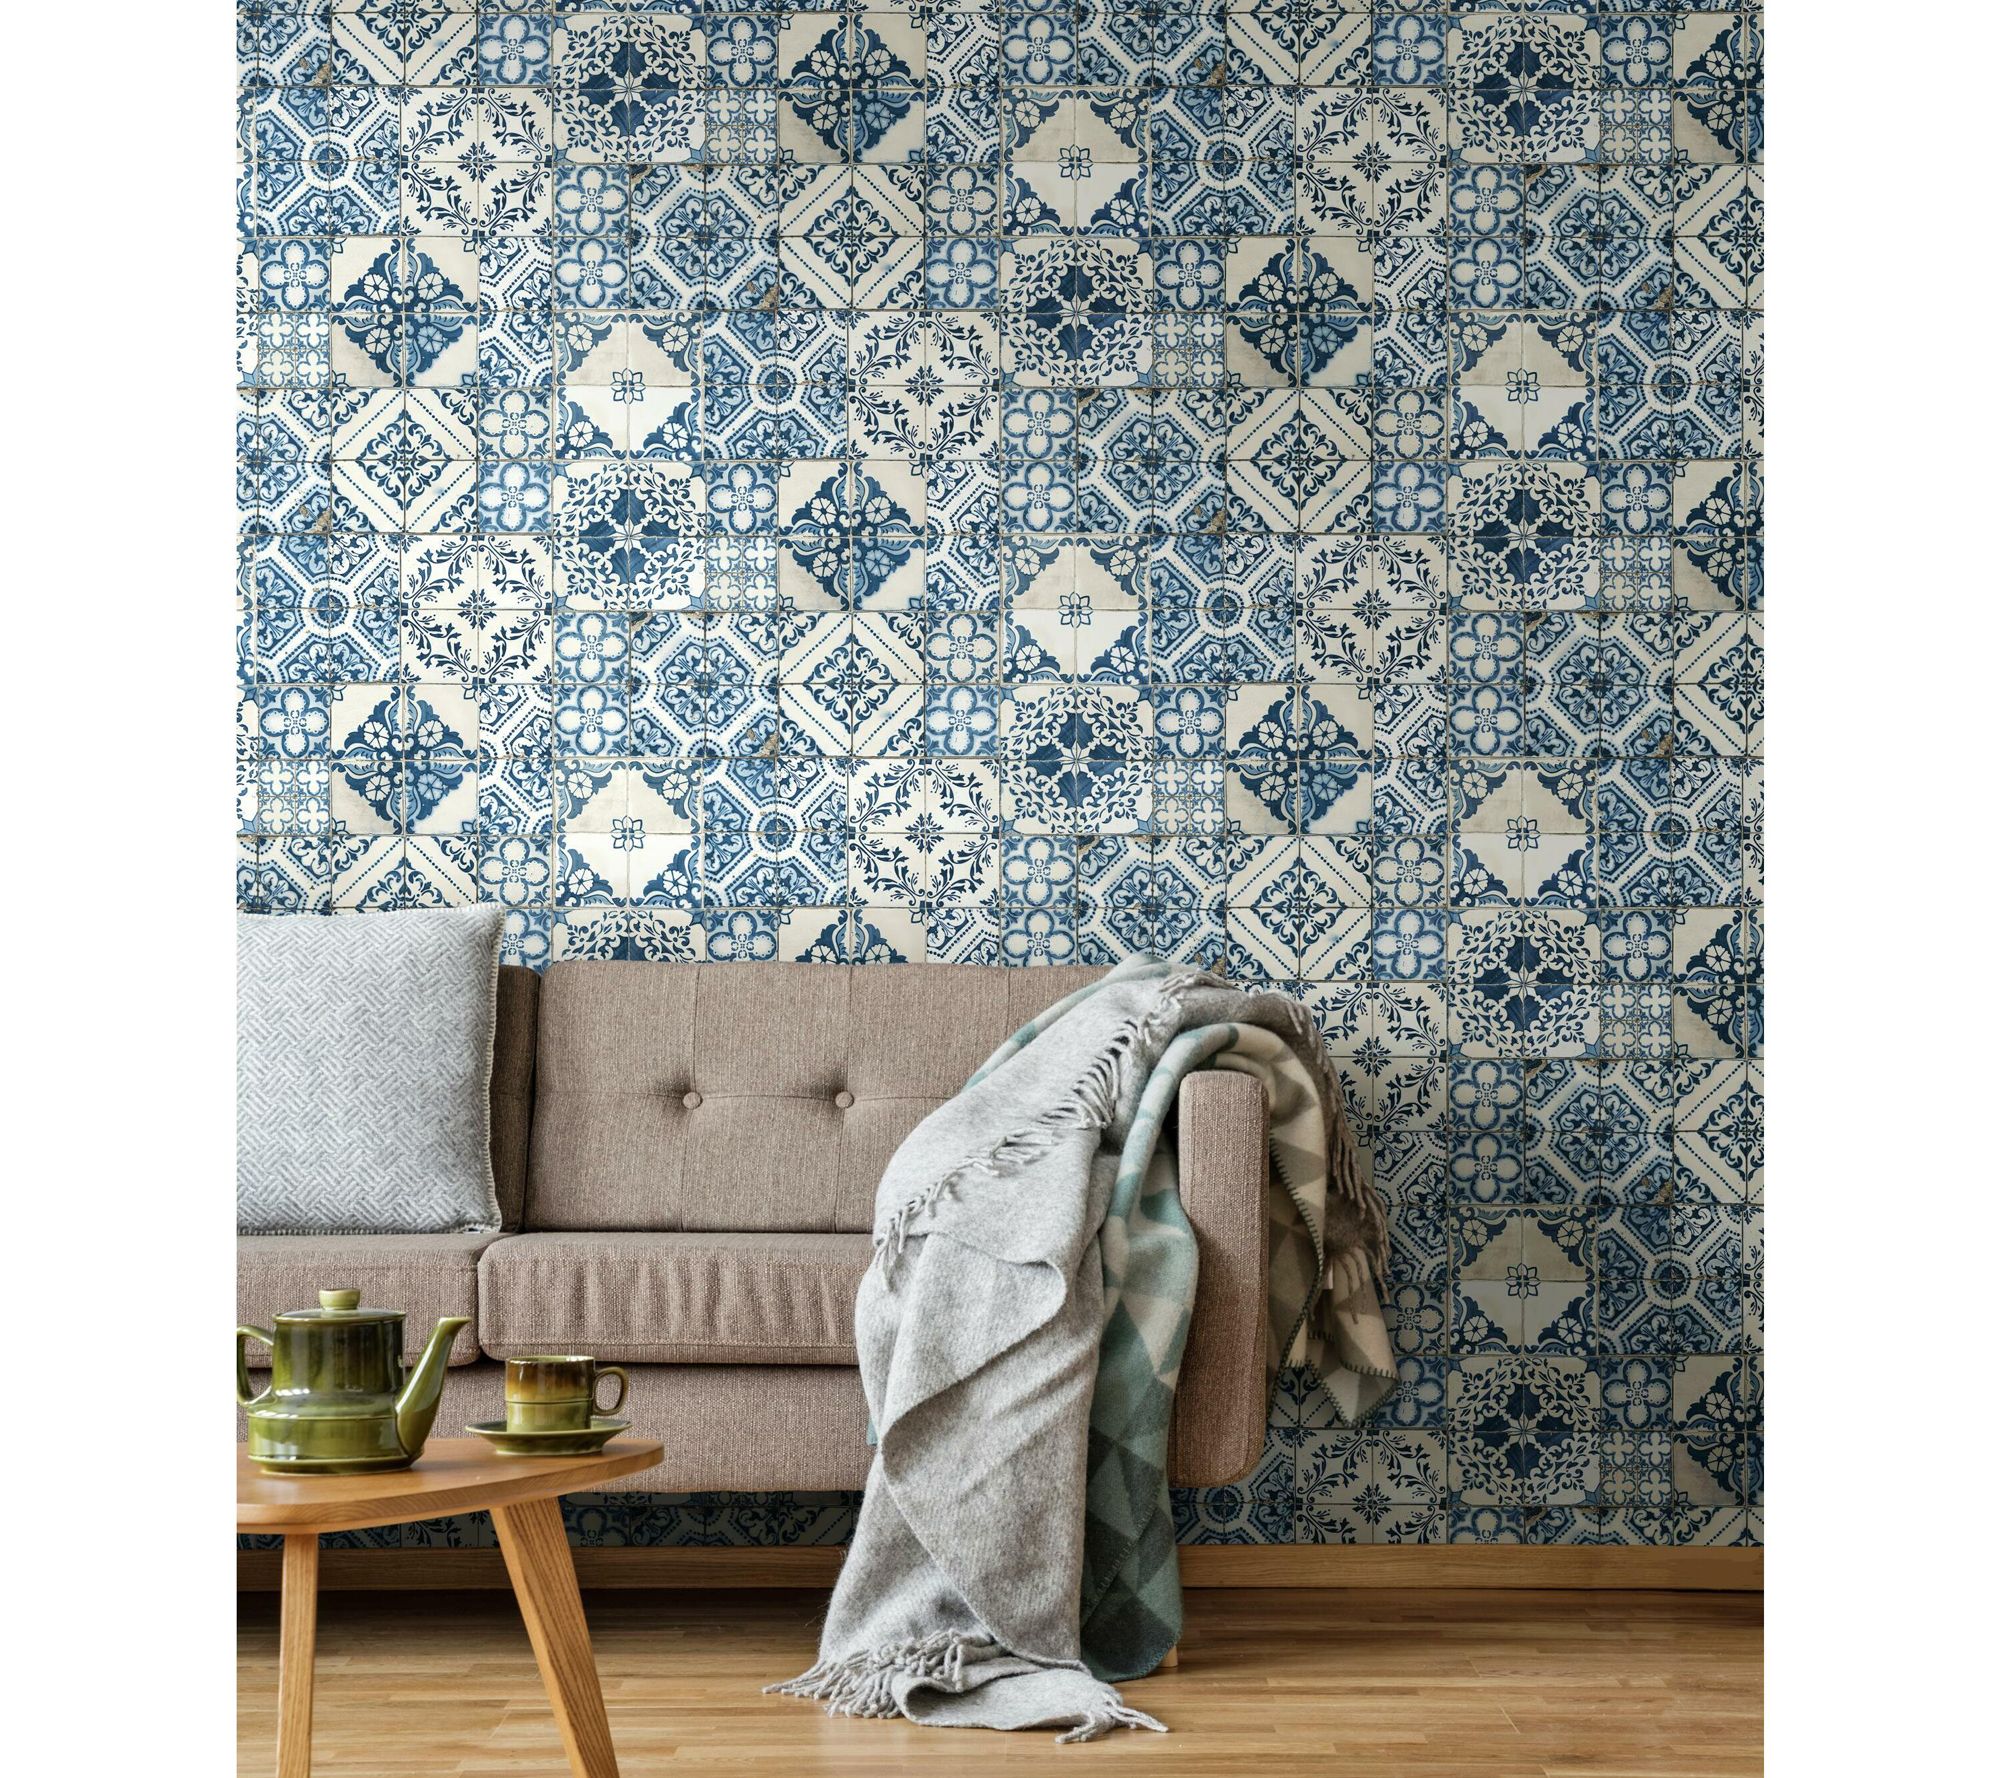 Mediterranean Tile-Blue Wall Decal - QVC.com